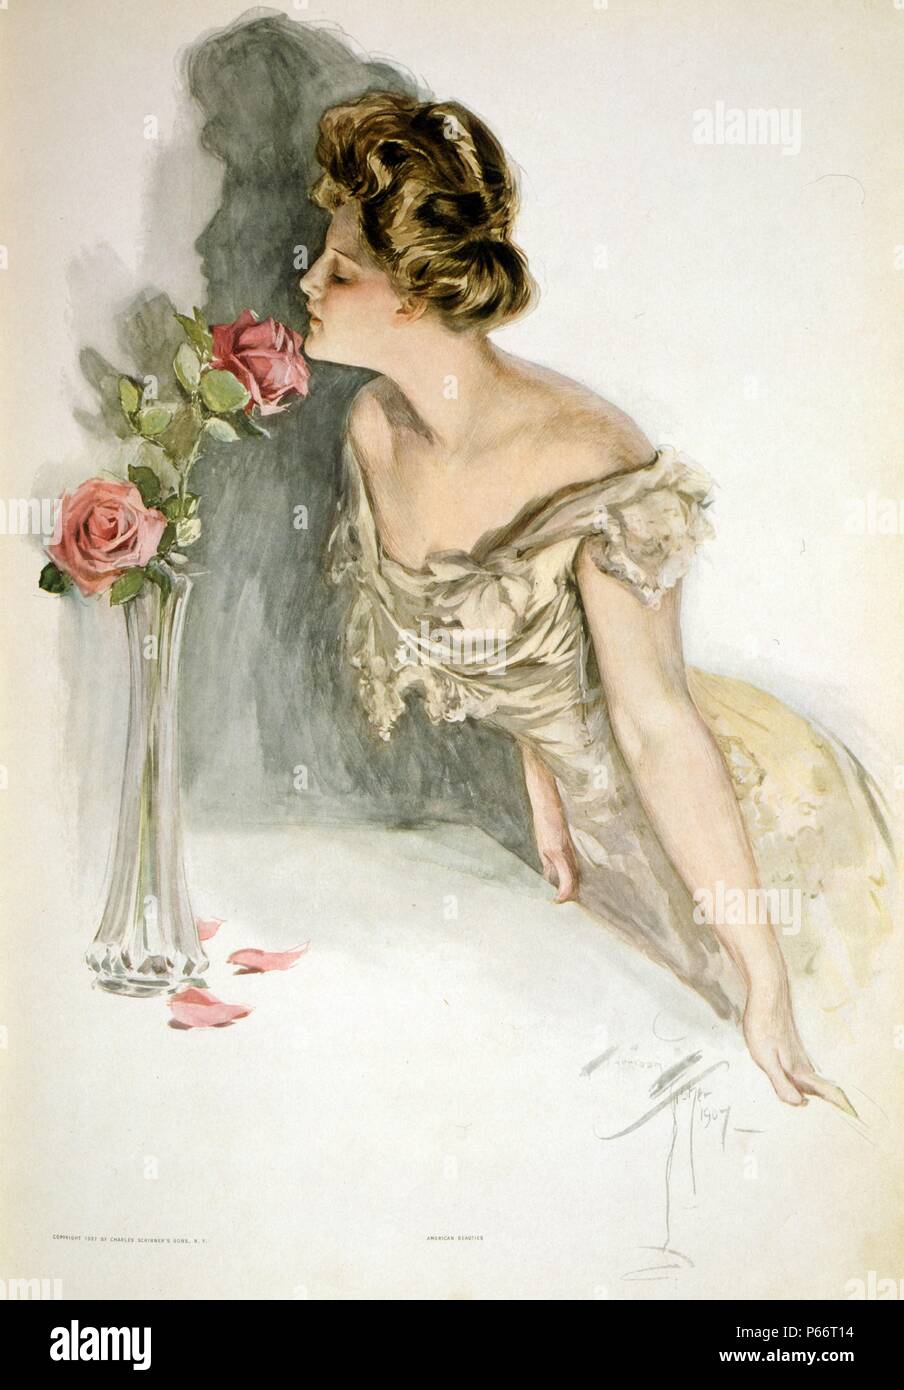 American Beauties von Harrison Fisher, 1875-1934, Künstler 1907. Magazin Abbildung: Drei viertel länge Porträt einer Frau, die nach links, lehnte sich an einen Tisch und einen Geruch lange stammte Rose in einer Vase. Stockfoto